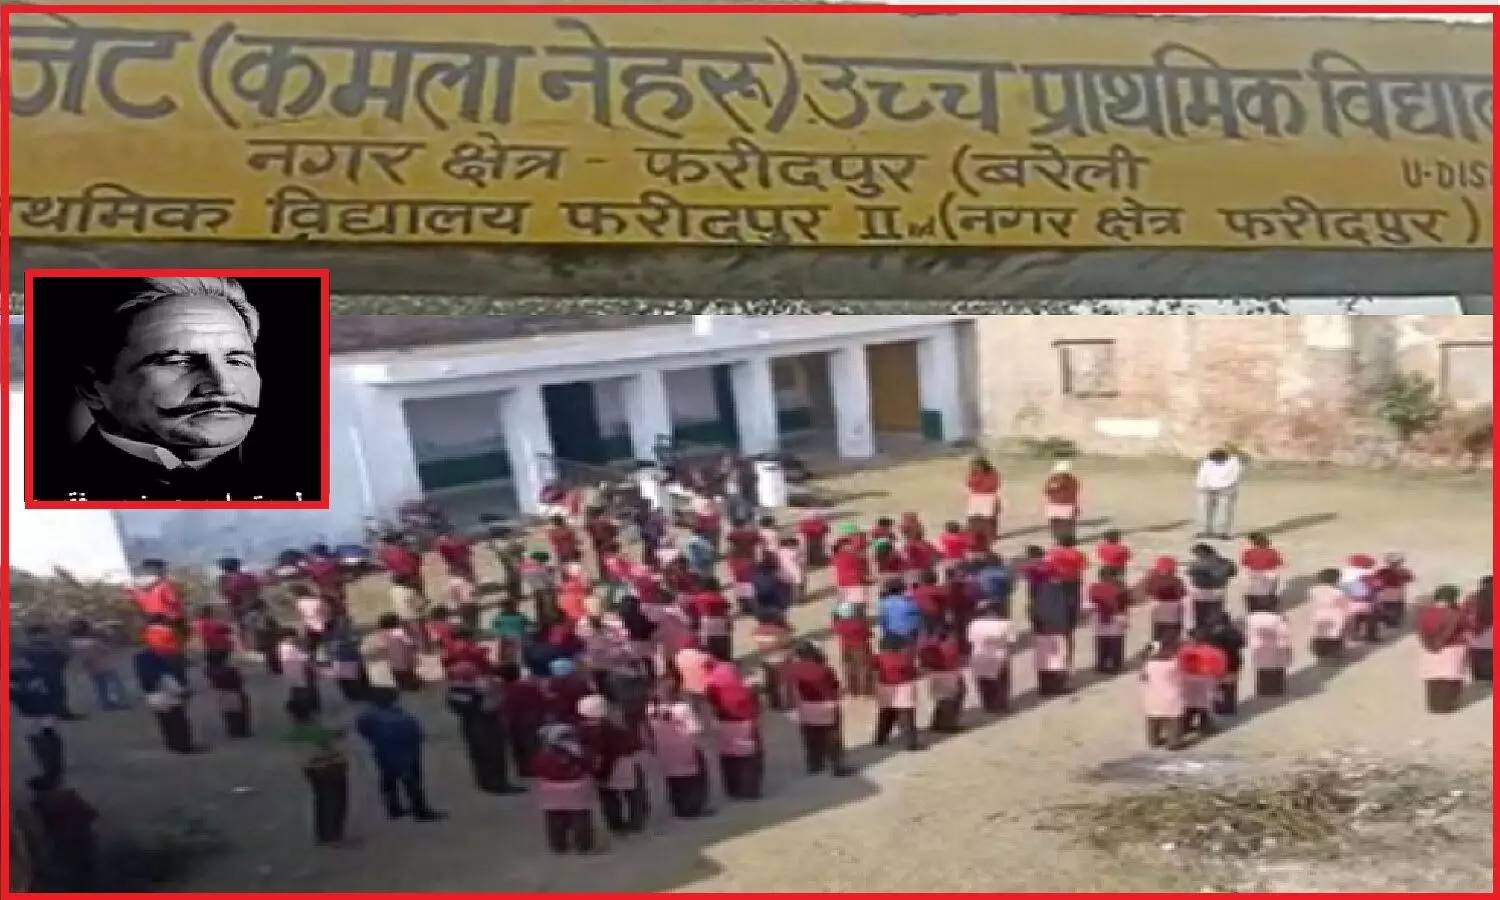 बरेली के सरकारी स्कूल में इकबाल की लब पे आती है दुआ... गीत बन गया गुनाह, विश्व हिंदू परिषद की शिकायत पर प्रिंसिपल निलंबित